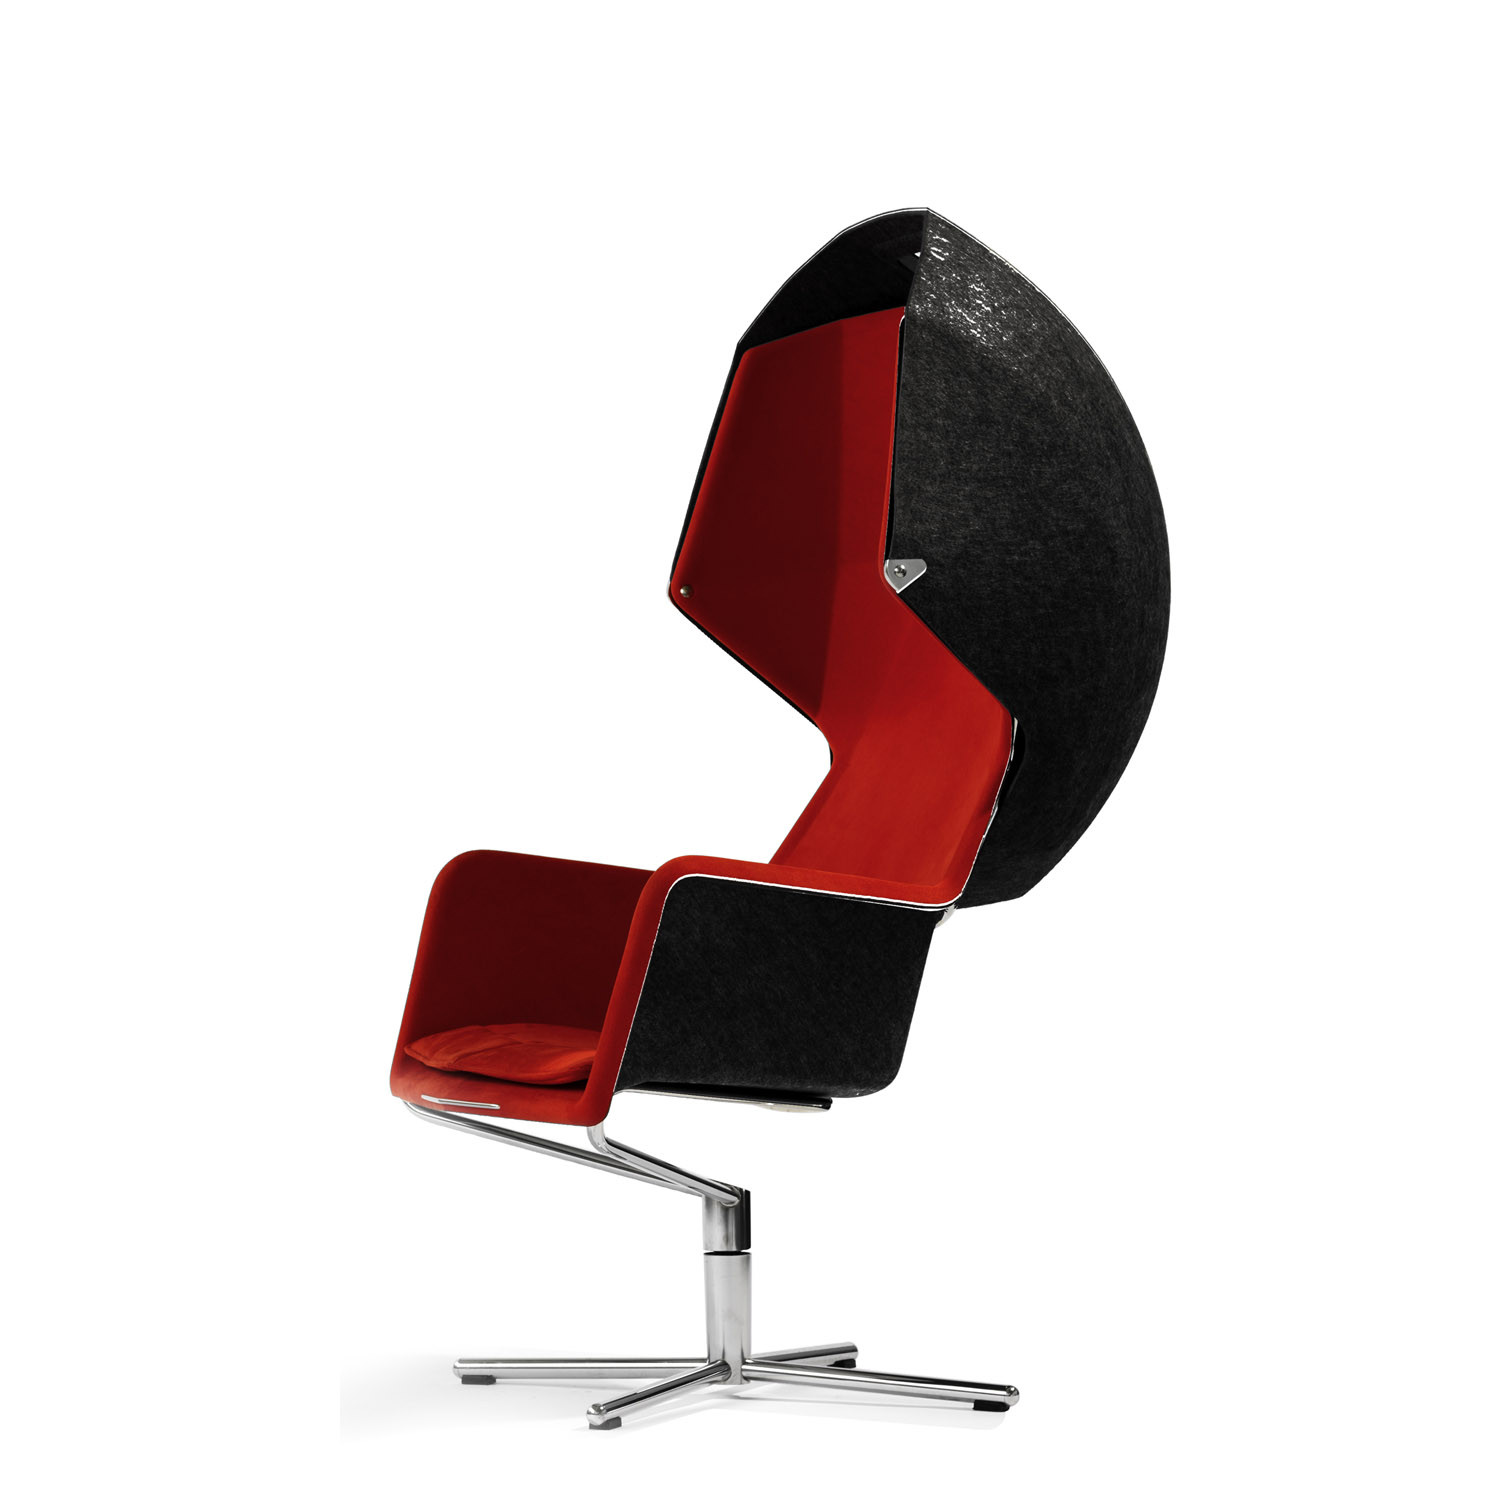 Peekaboo Chair by Stefan Borselius